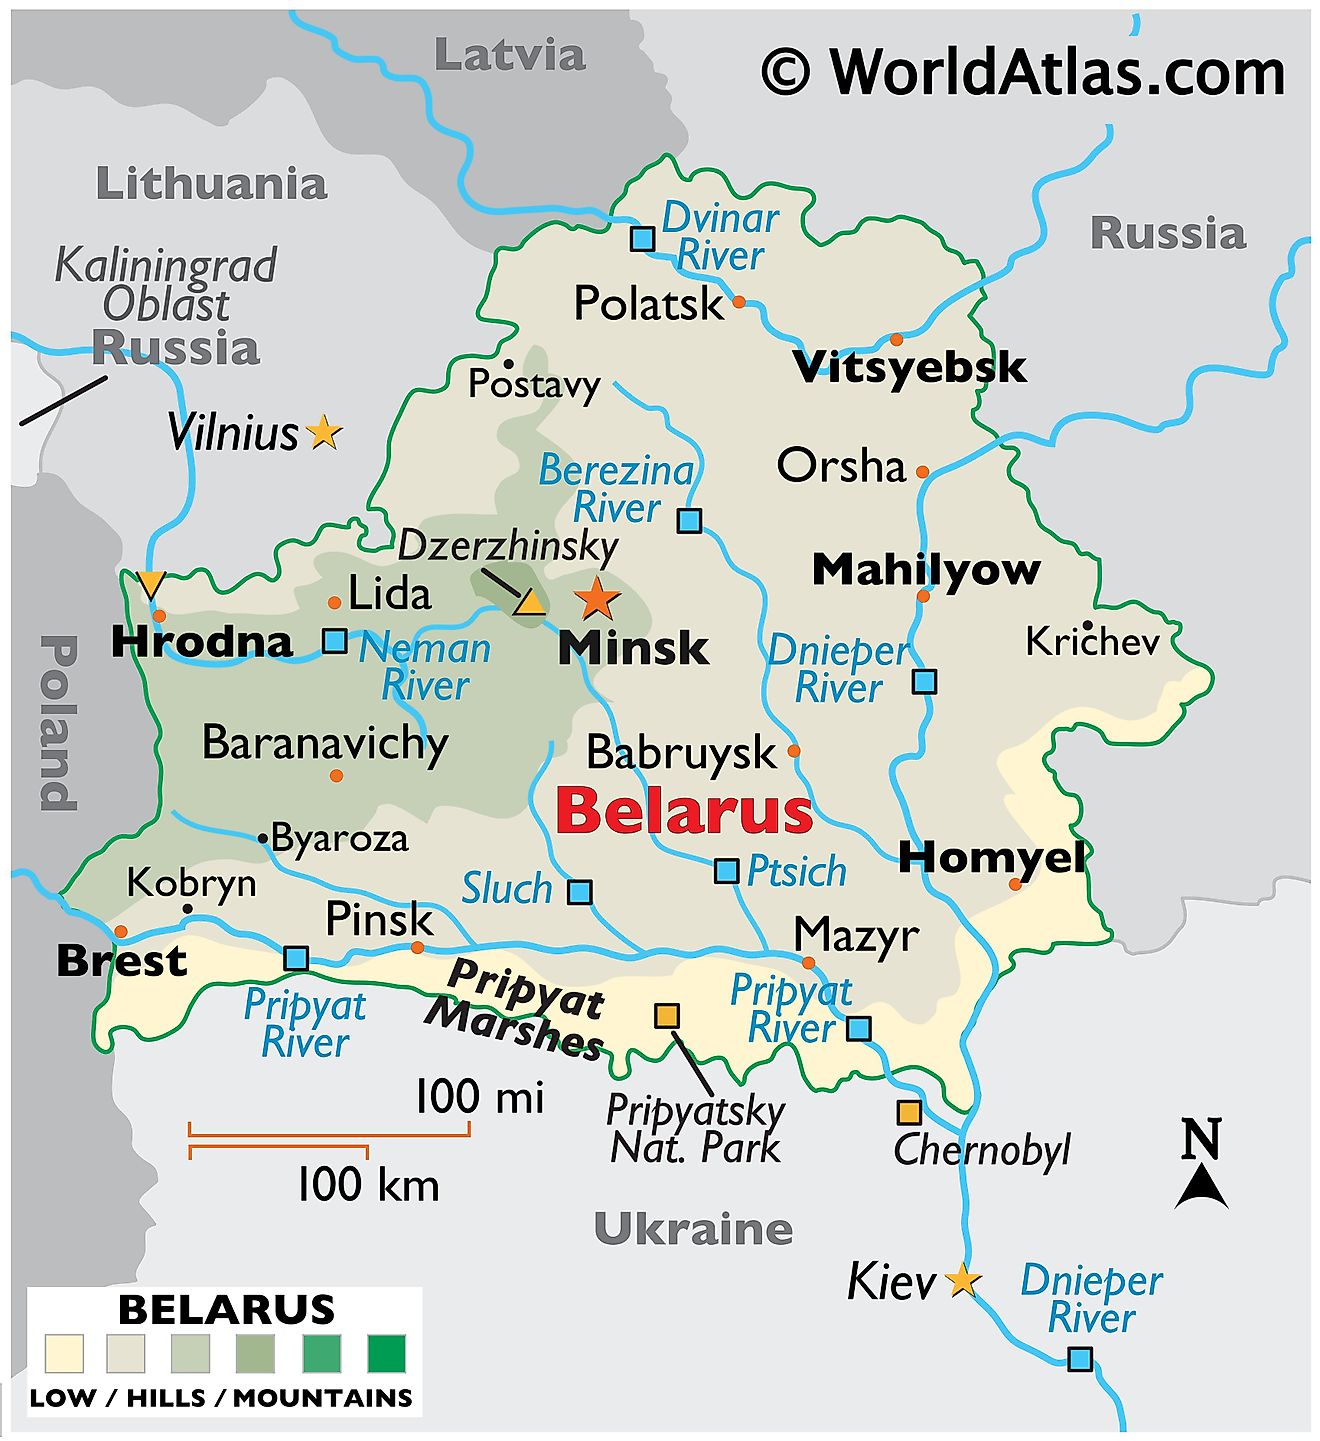 Mapa físico de Bielorrusia que muestra el terreno, los ríos principales, los puntos extremos, las ciudades importantes, las fronteras internacionales, etc.